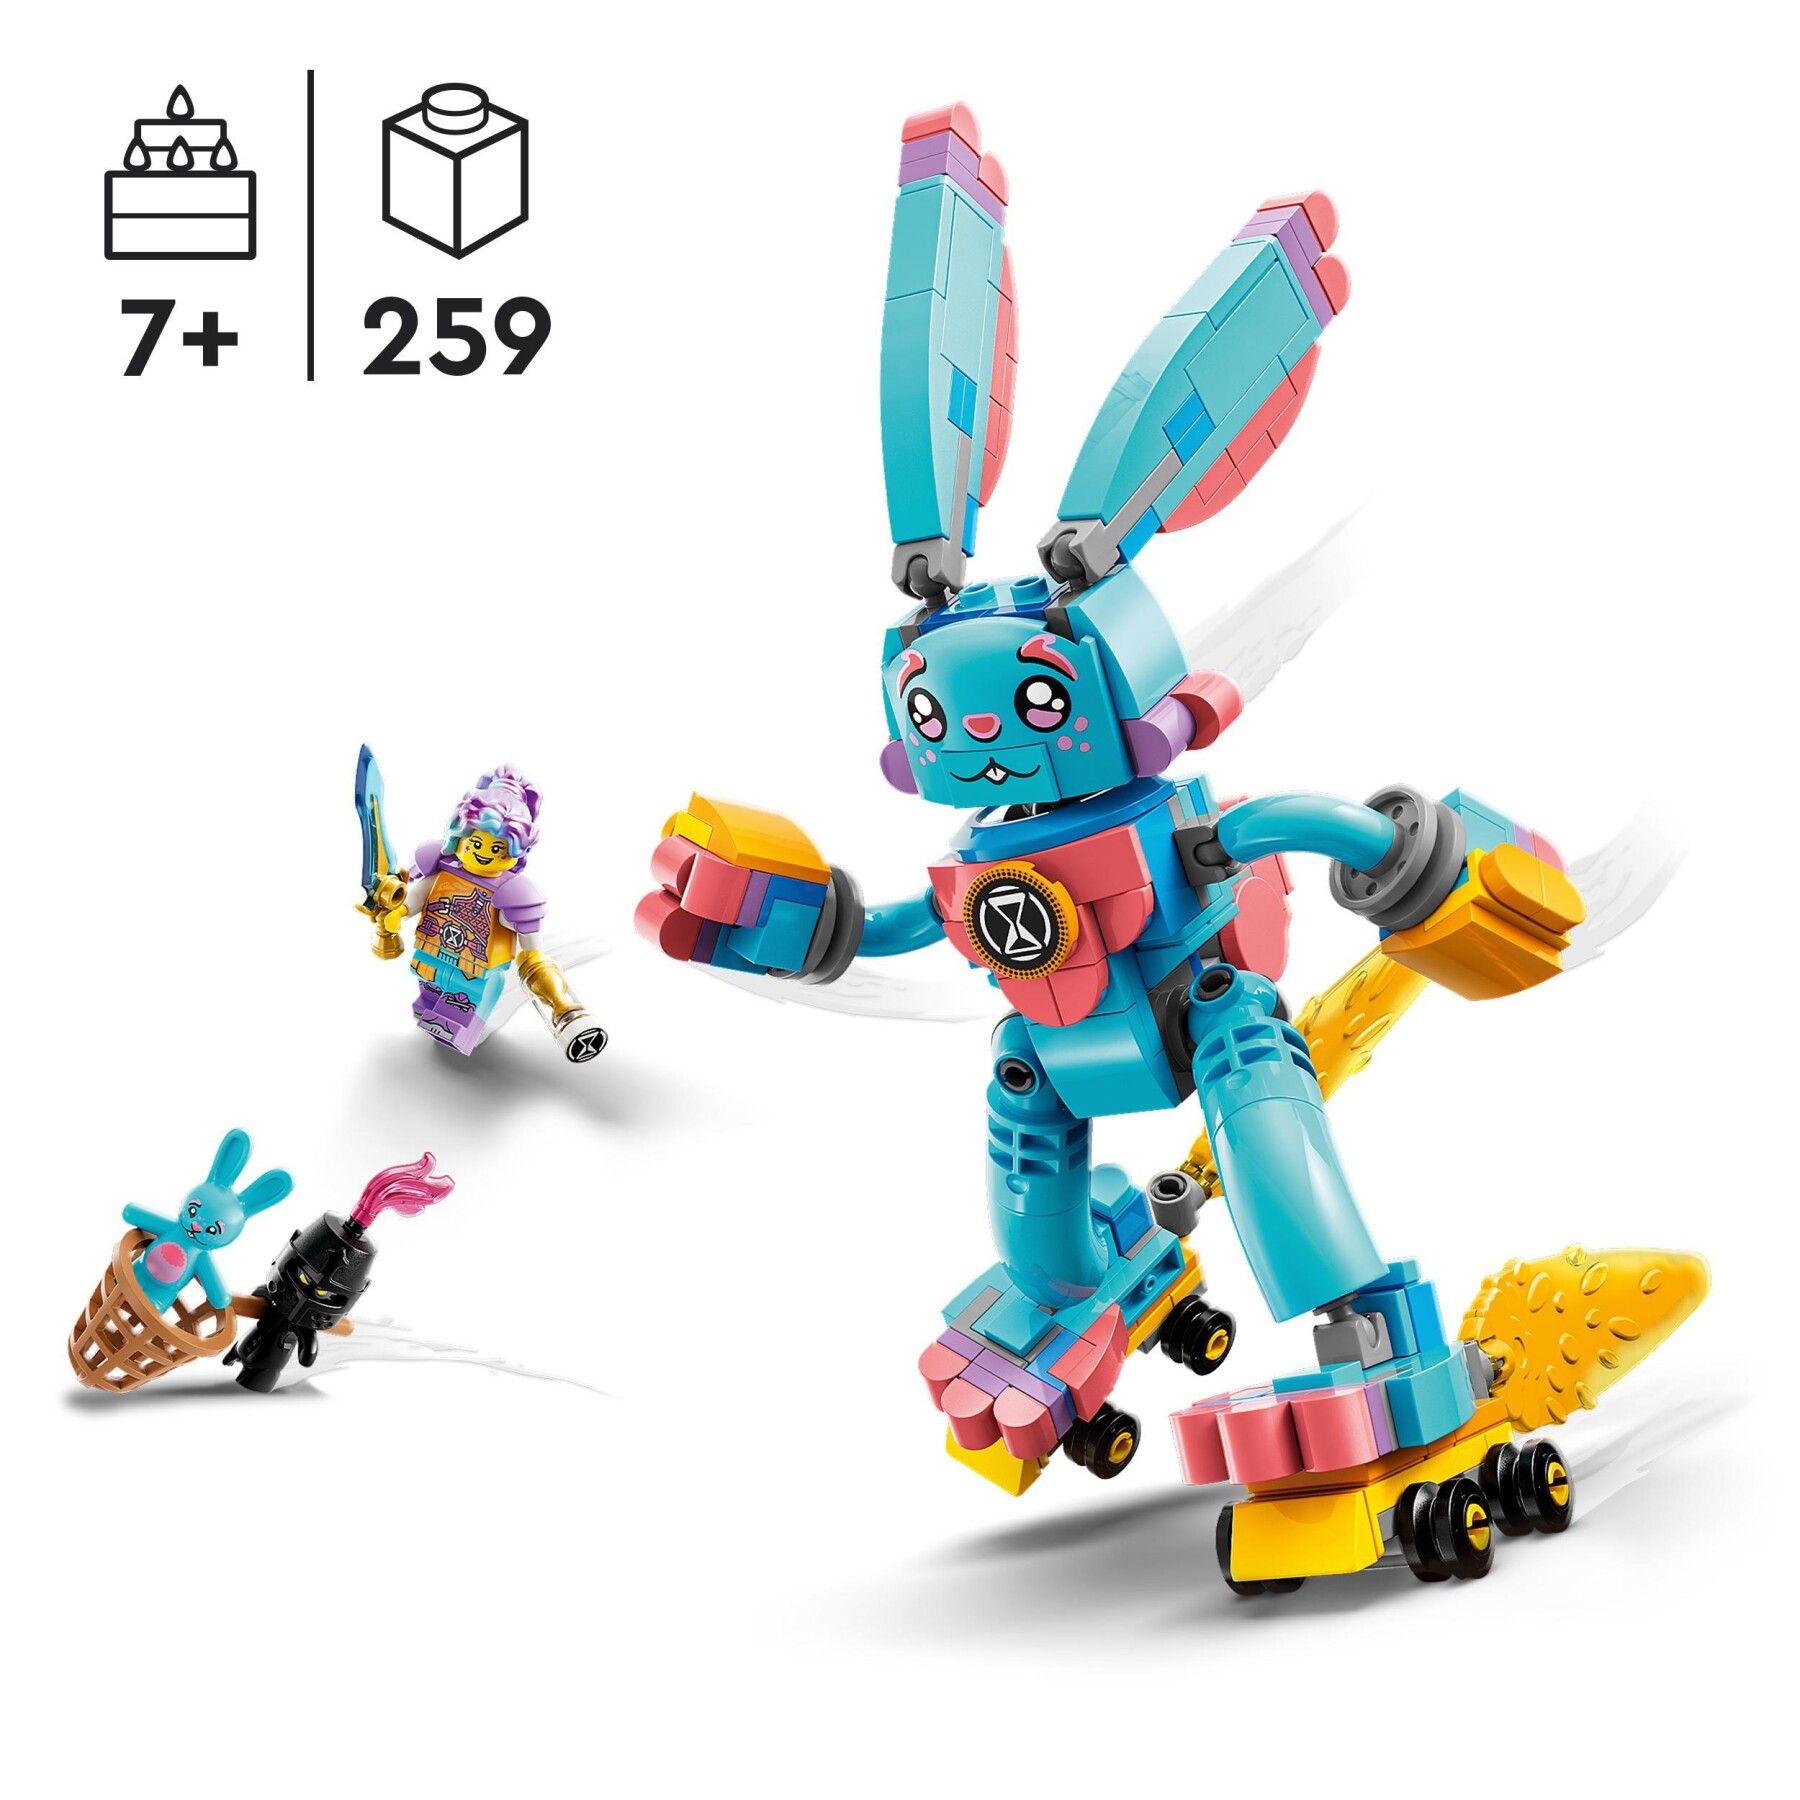 Lego dreamzzz 71453 izzie e il coniglio bunchu, figura di animale giocattolo da costruire in 2 modi basato sullo show tv - Lego, LEGO DREAMZZZ